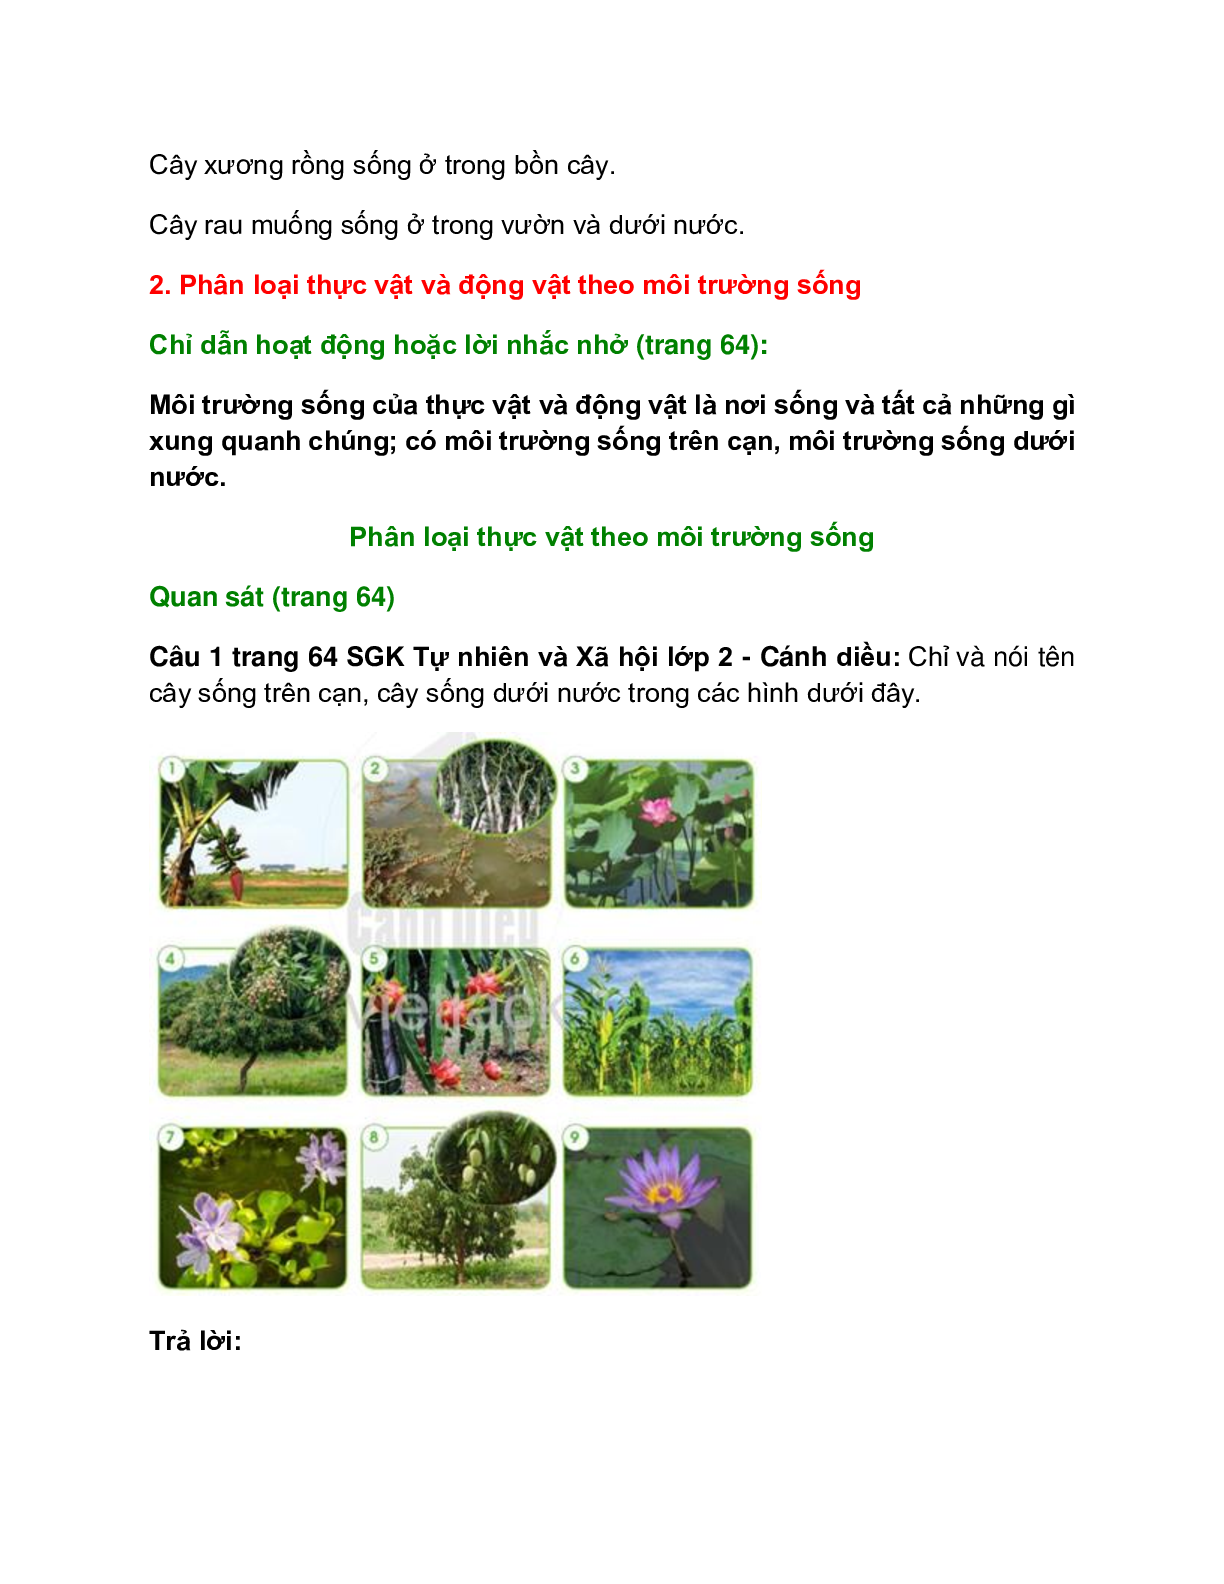 Giải SGK Tự nhiên và Xã hội lớp 2 trang 62, 63, 64, 65, 66, 67 Bài 11: Môi trường sống của thực vật và động vật – Cánh diều (trang 5)